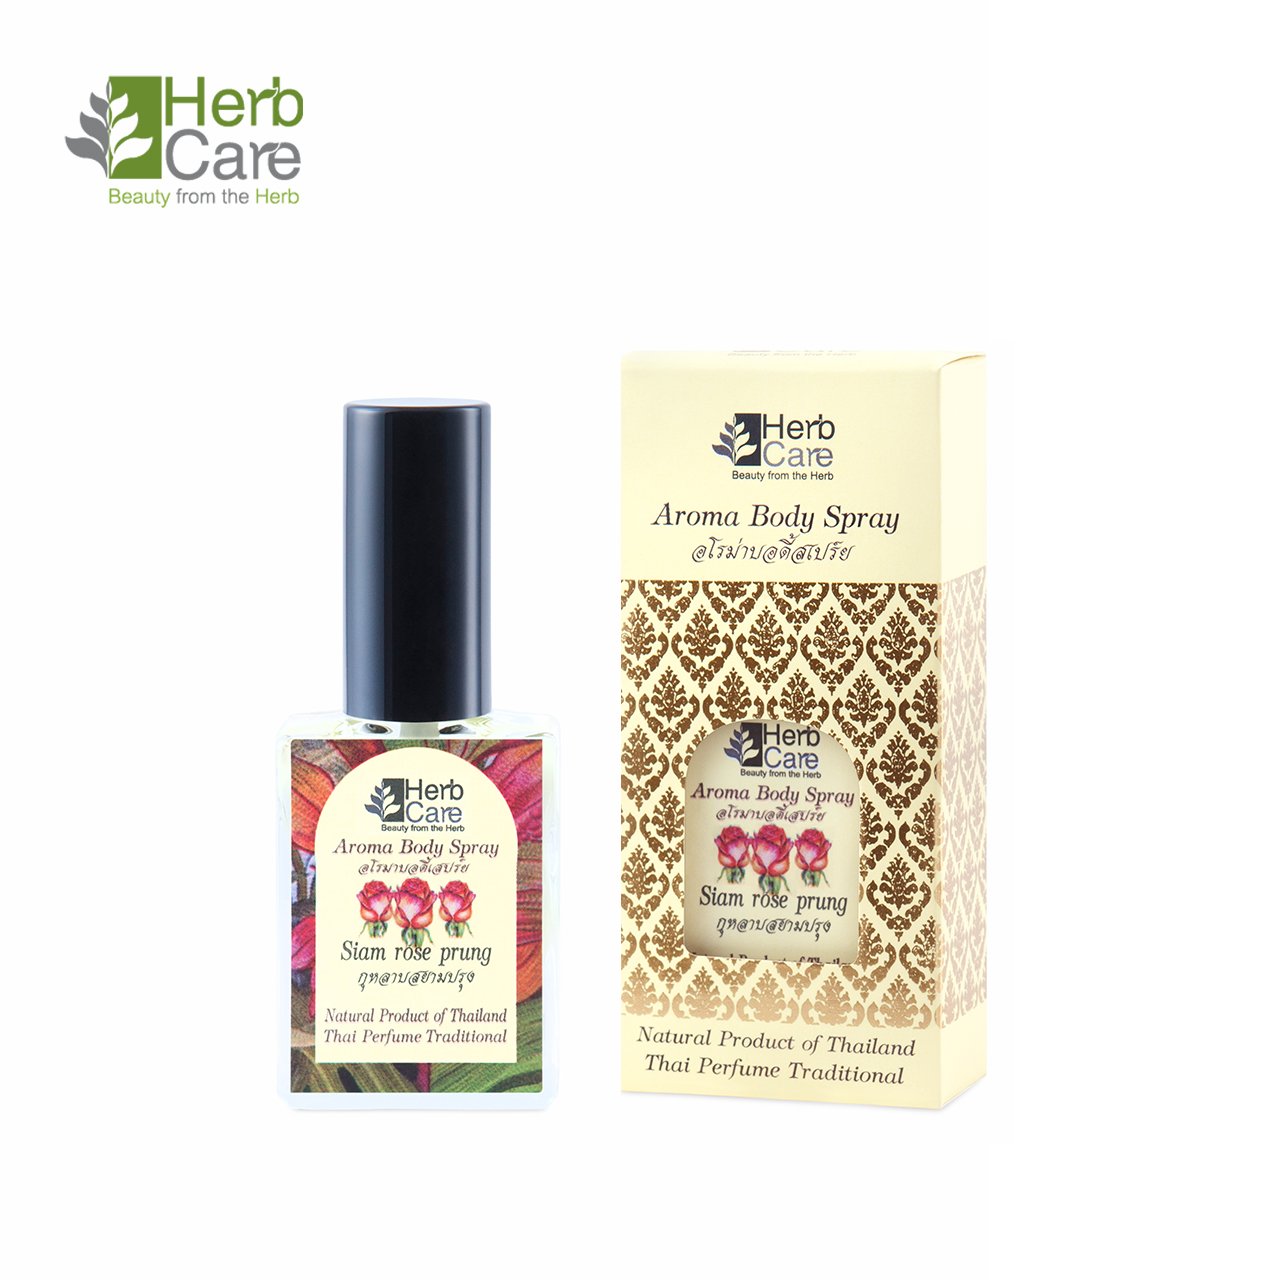 Siam Rose Prung : Aroma Body Perfume